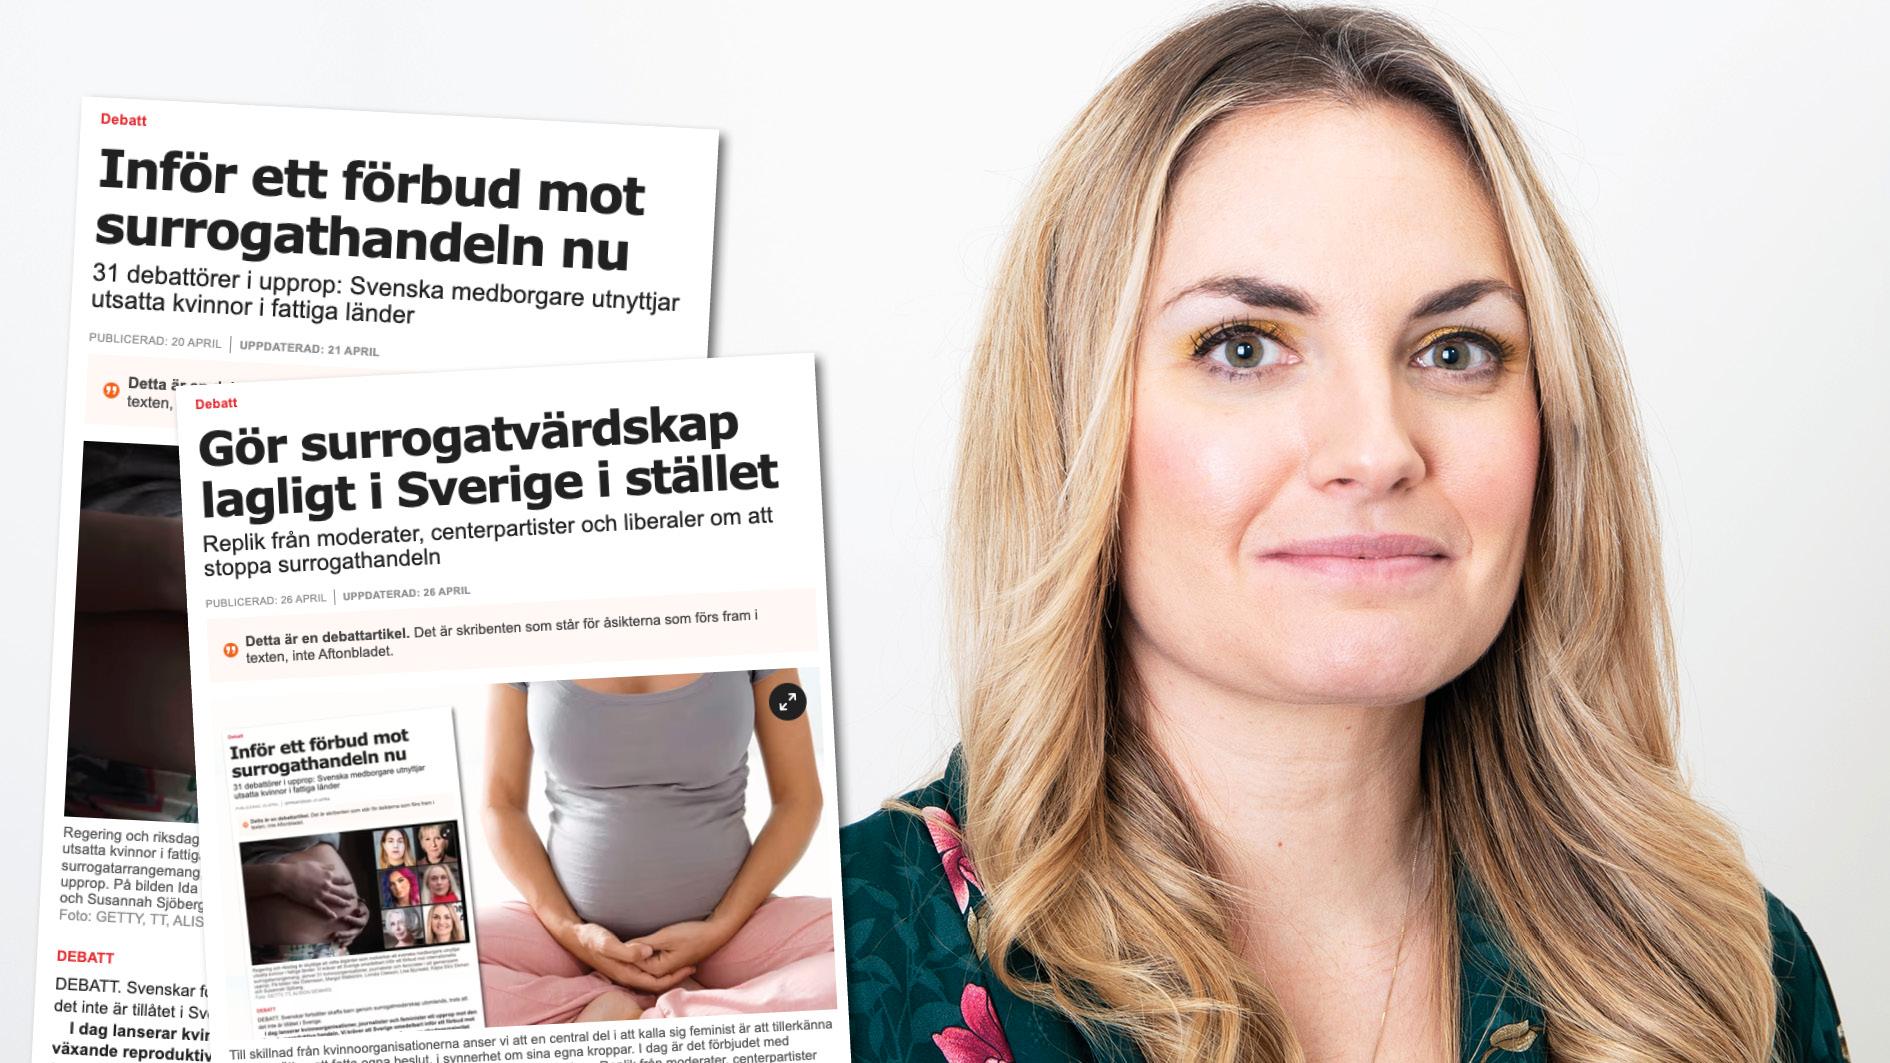 Legalisering skulle leda till ökad efterfrågan som inte kan tillgodoses nationellt, vilket skulle få ännu fler svenskar att söka sig utomlands. Det är en utveckling som syns i länder som valt att gå denna väg. Slutreplik från Sveriges kvinnoorganisationer.